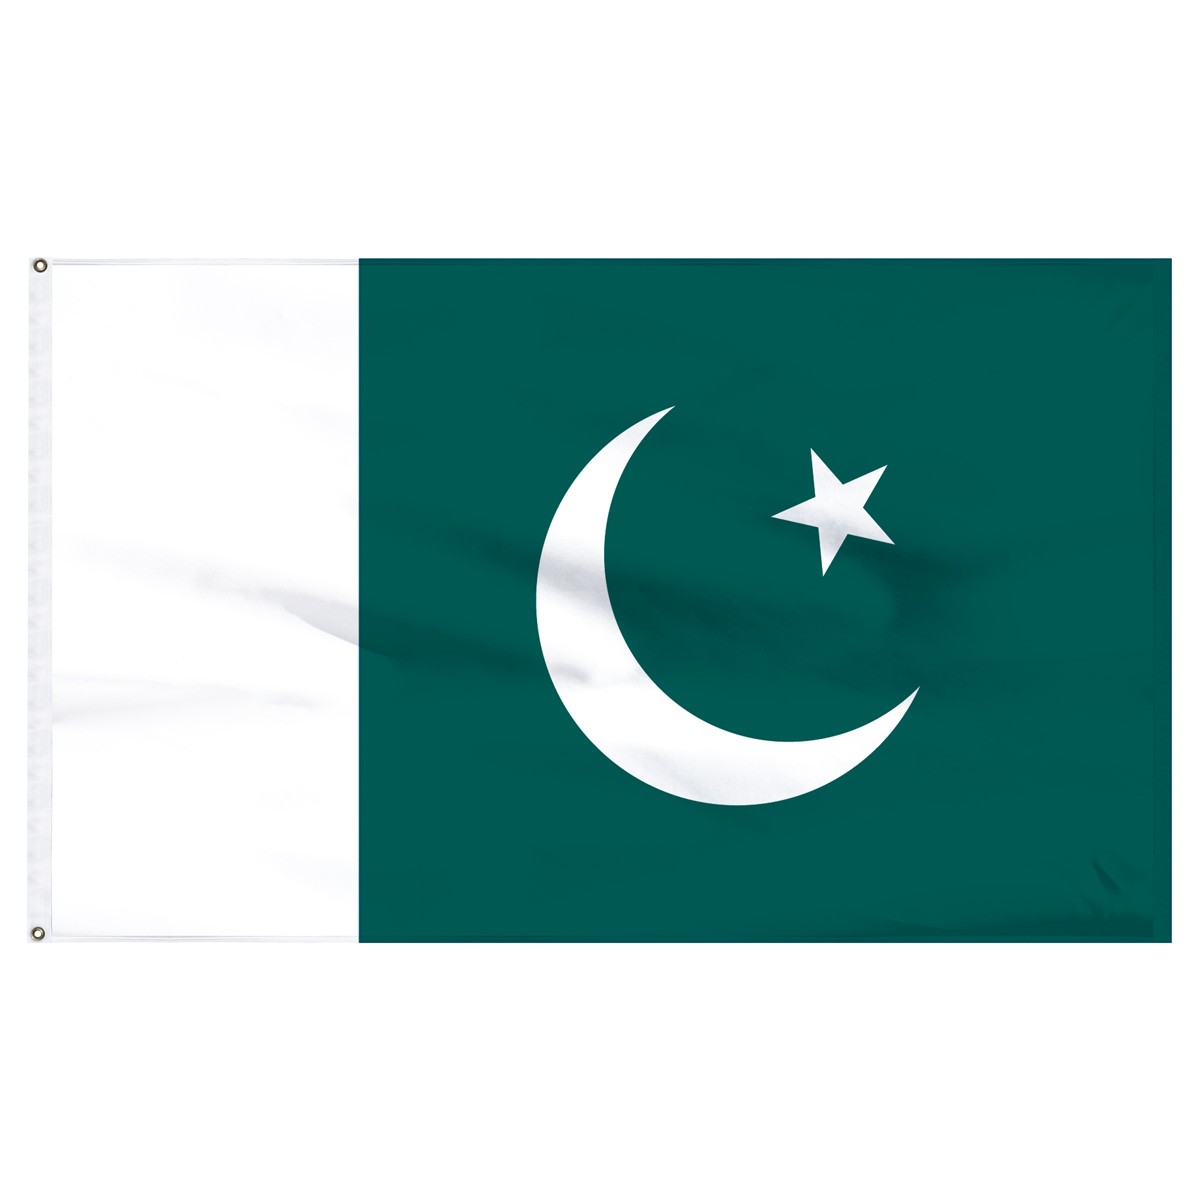 Pakistan Executive Flags